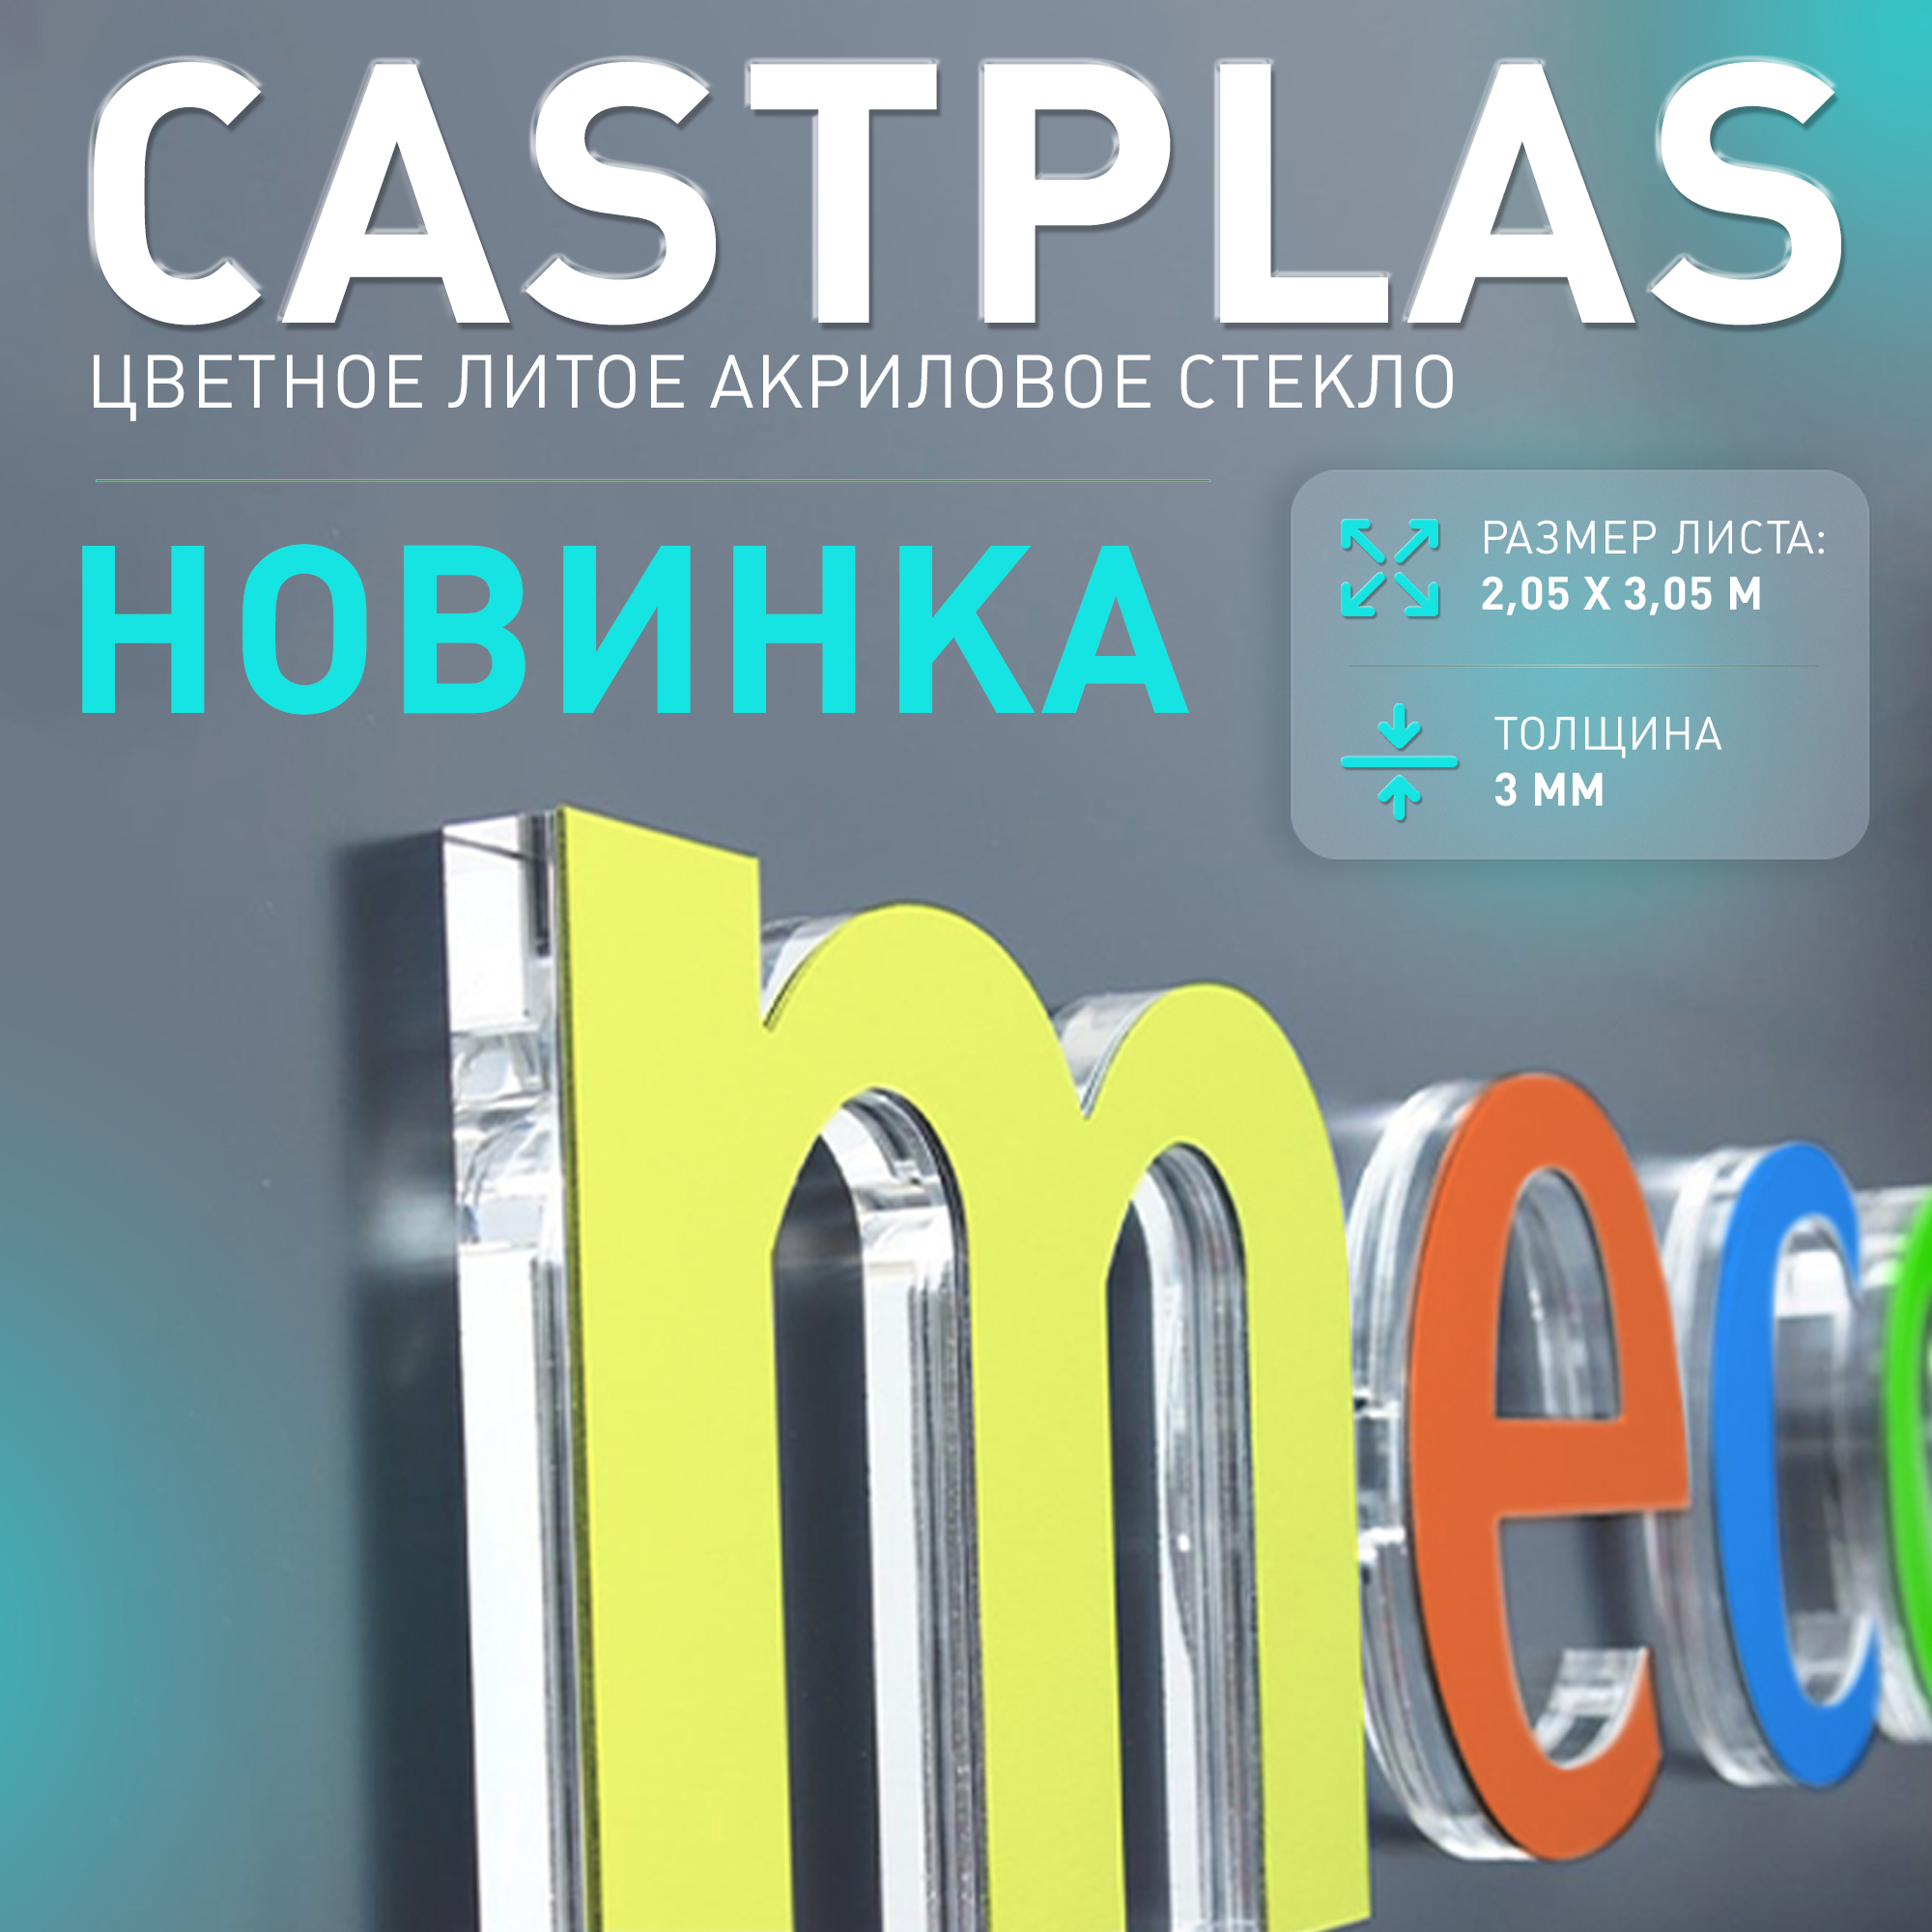 Новинка - цветное акриловое стекло Casplas на маркетплейсе ФорДА